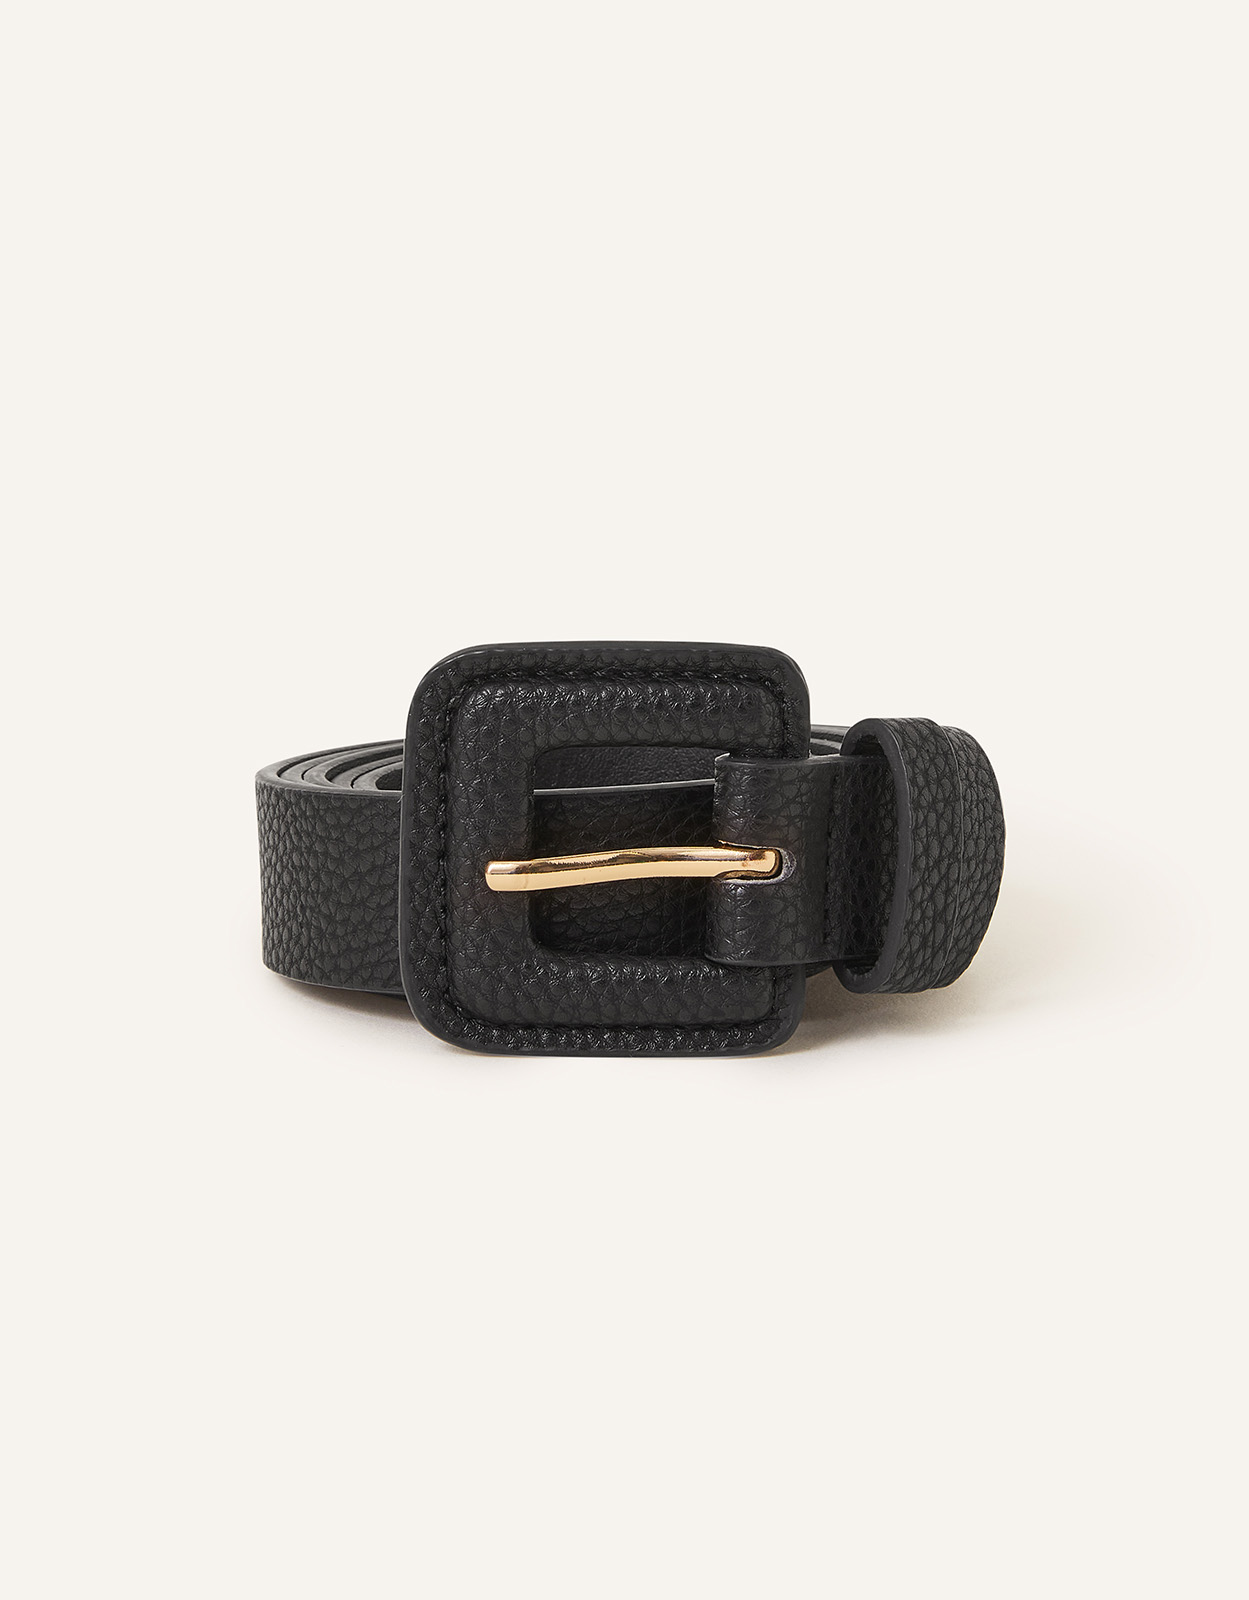 Accessorize Women's Square Buckle Belt Black, Size: M